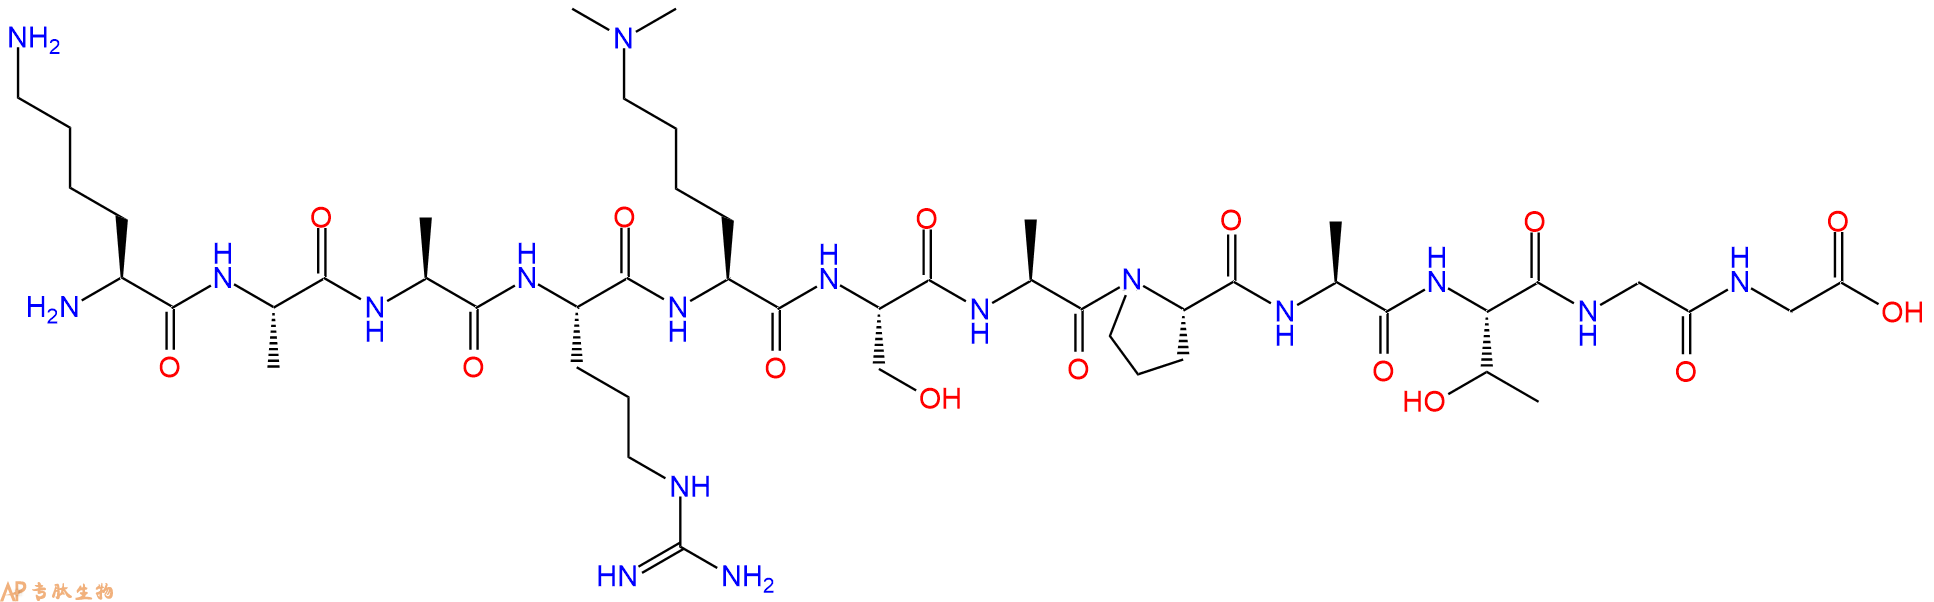 专肽生物产品组蛋白肽段[Lys(Me)227]-Histone H3(23-34), H3K27(Me2